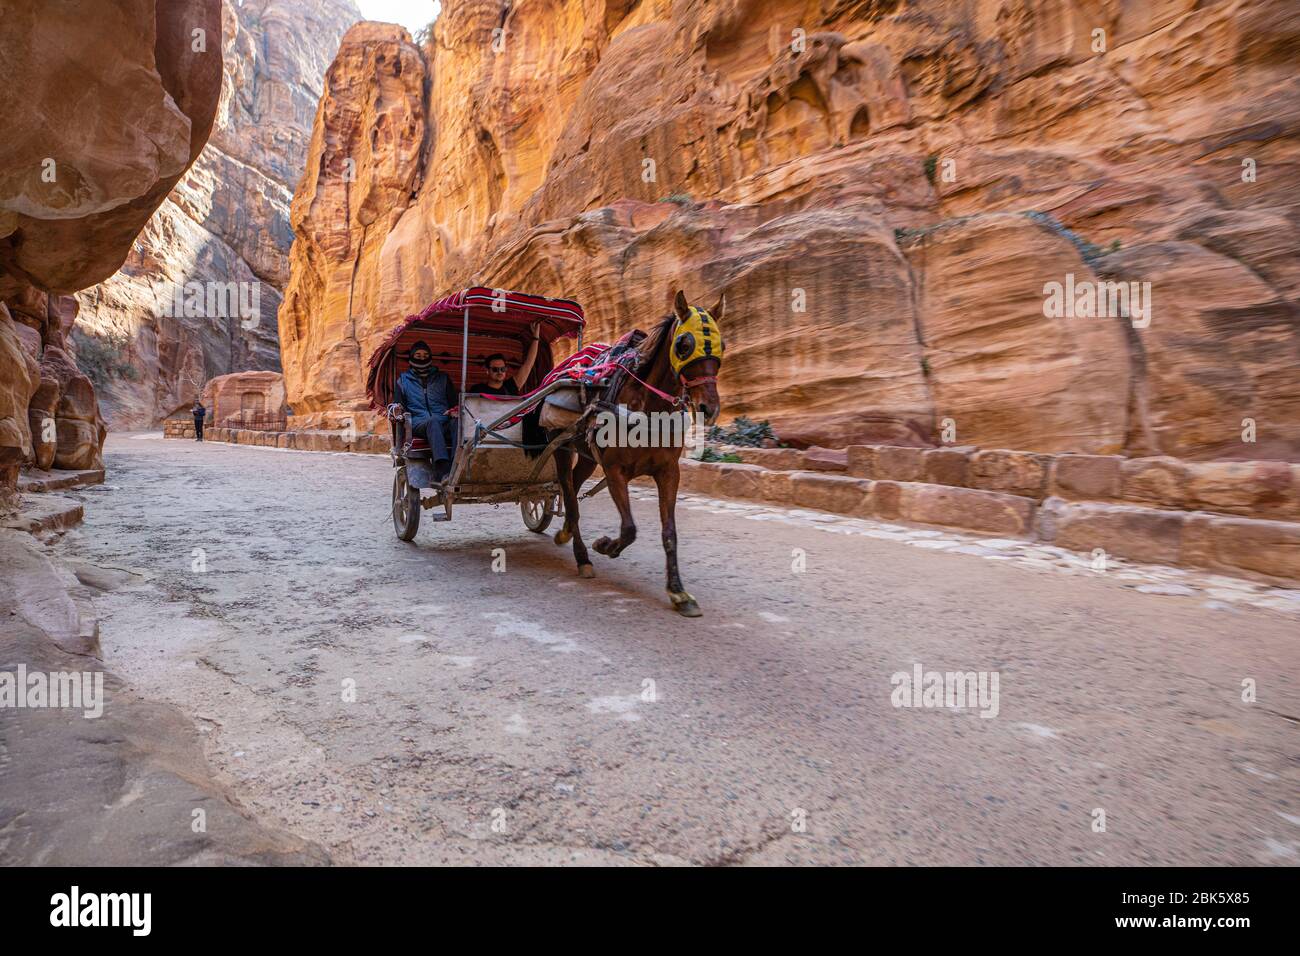 Carruajes tirados por caballos en Siq Slot Canyon en la ciudad de Petra, Jordania Foto de stock